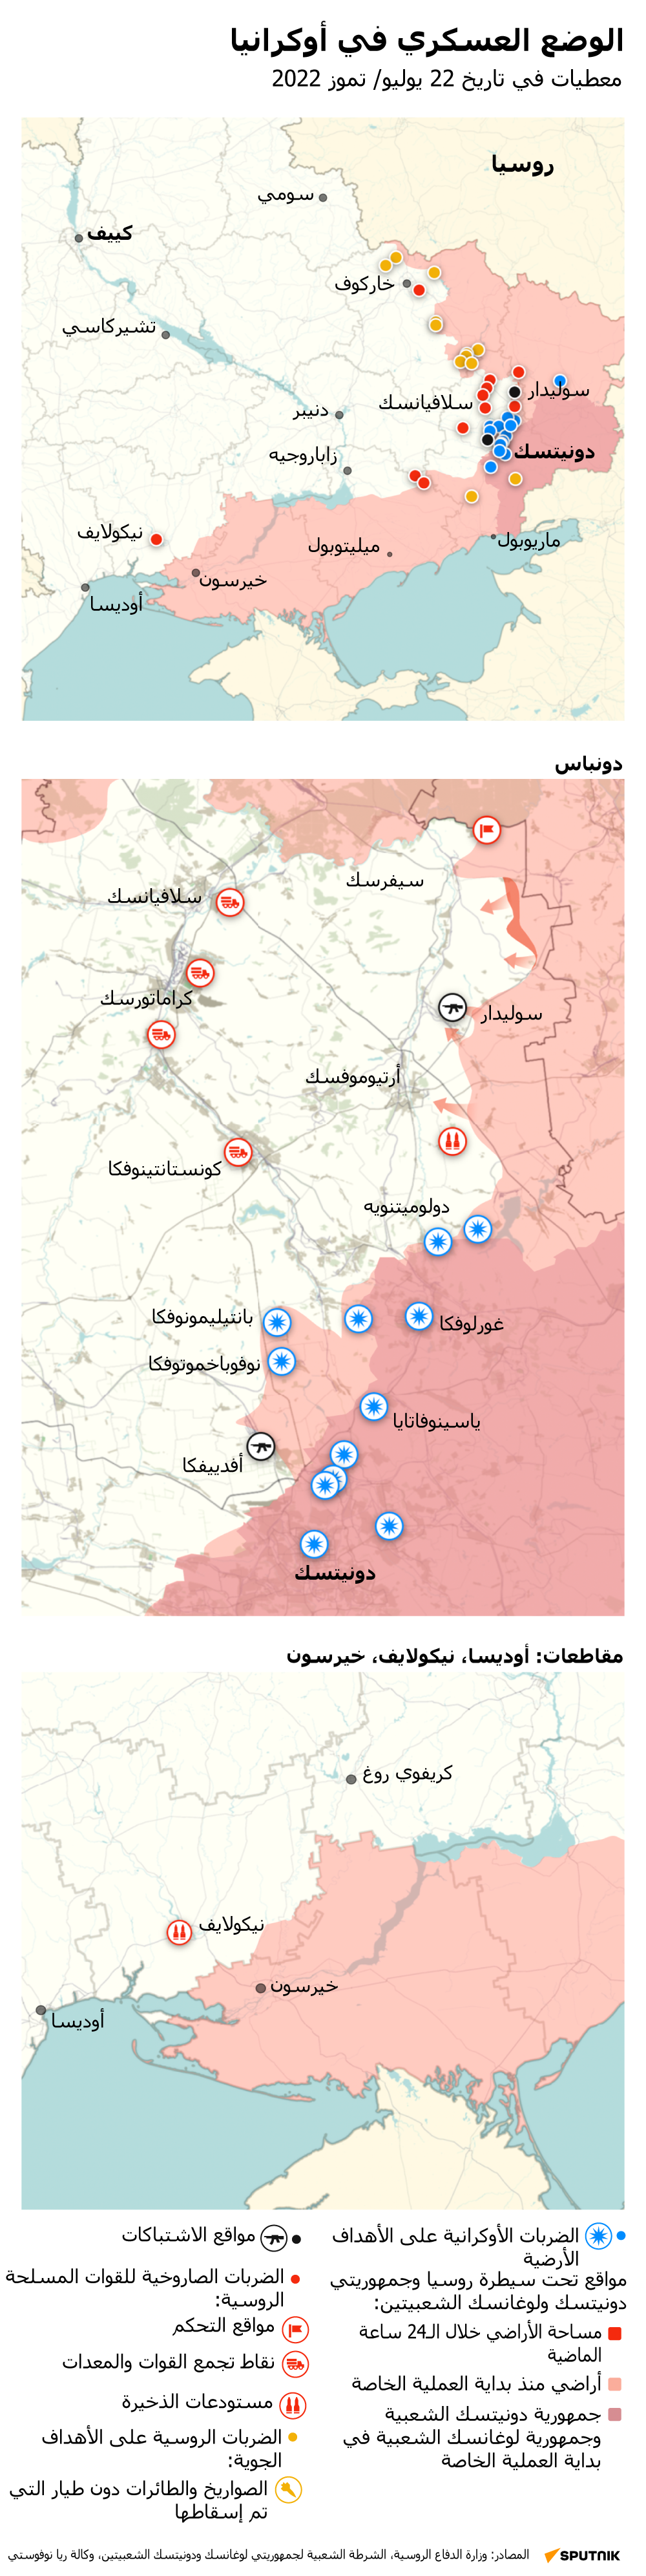 خريطة العملية العسكرية الروسية الخاصة في أوكرانيا اليوم 22 يوليو 2022 - سبوتنيك عربي